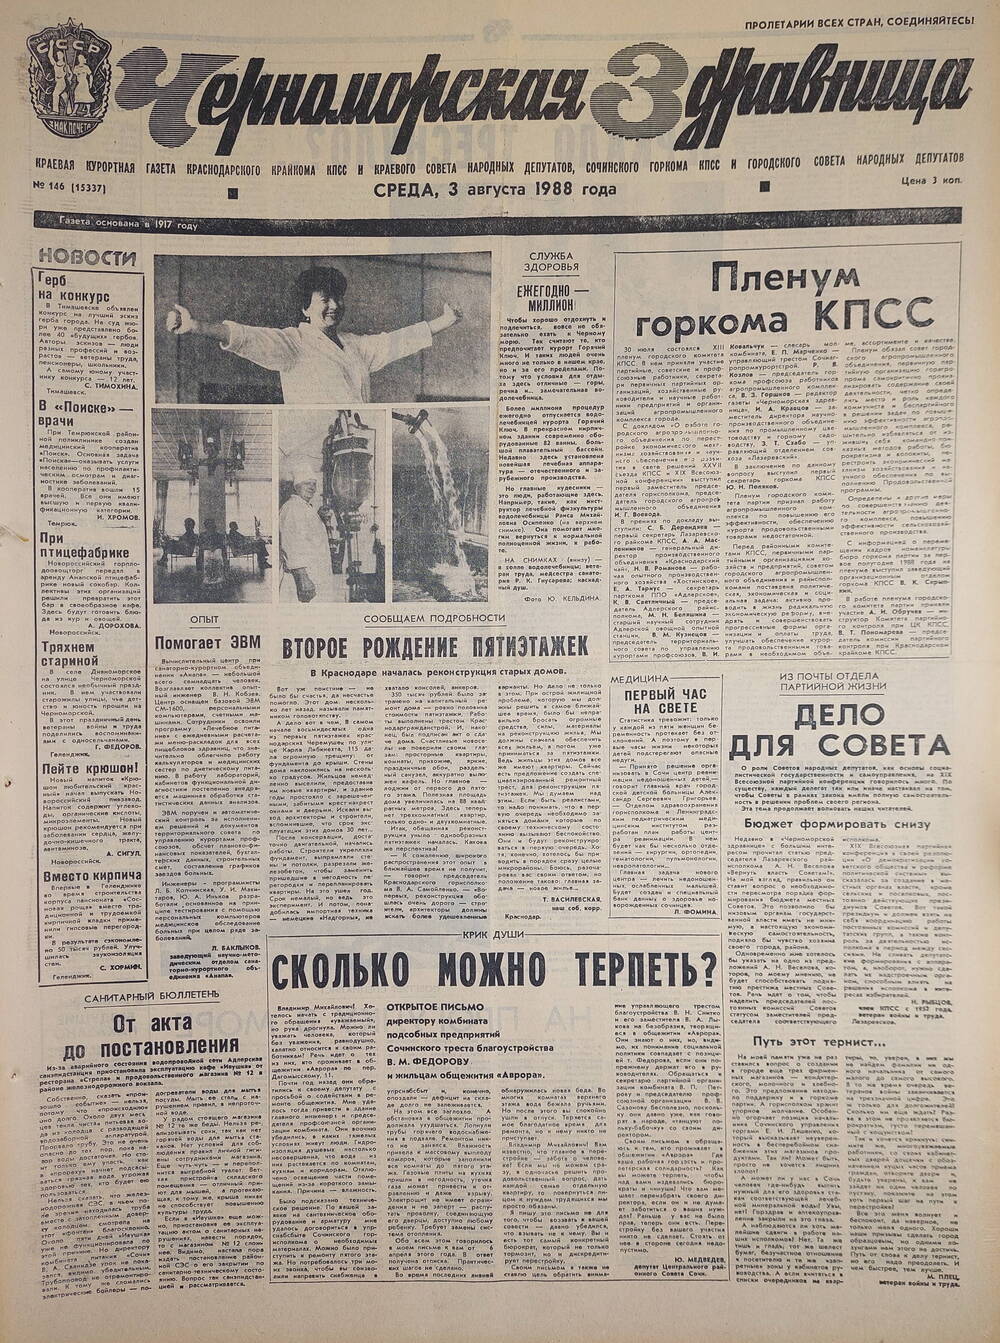 Газета краевая курортная «Черноморская здравница» № 146 (15337) от 3 августа 1988 г.